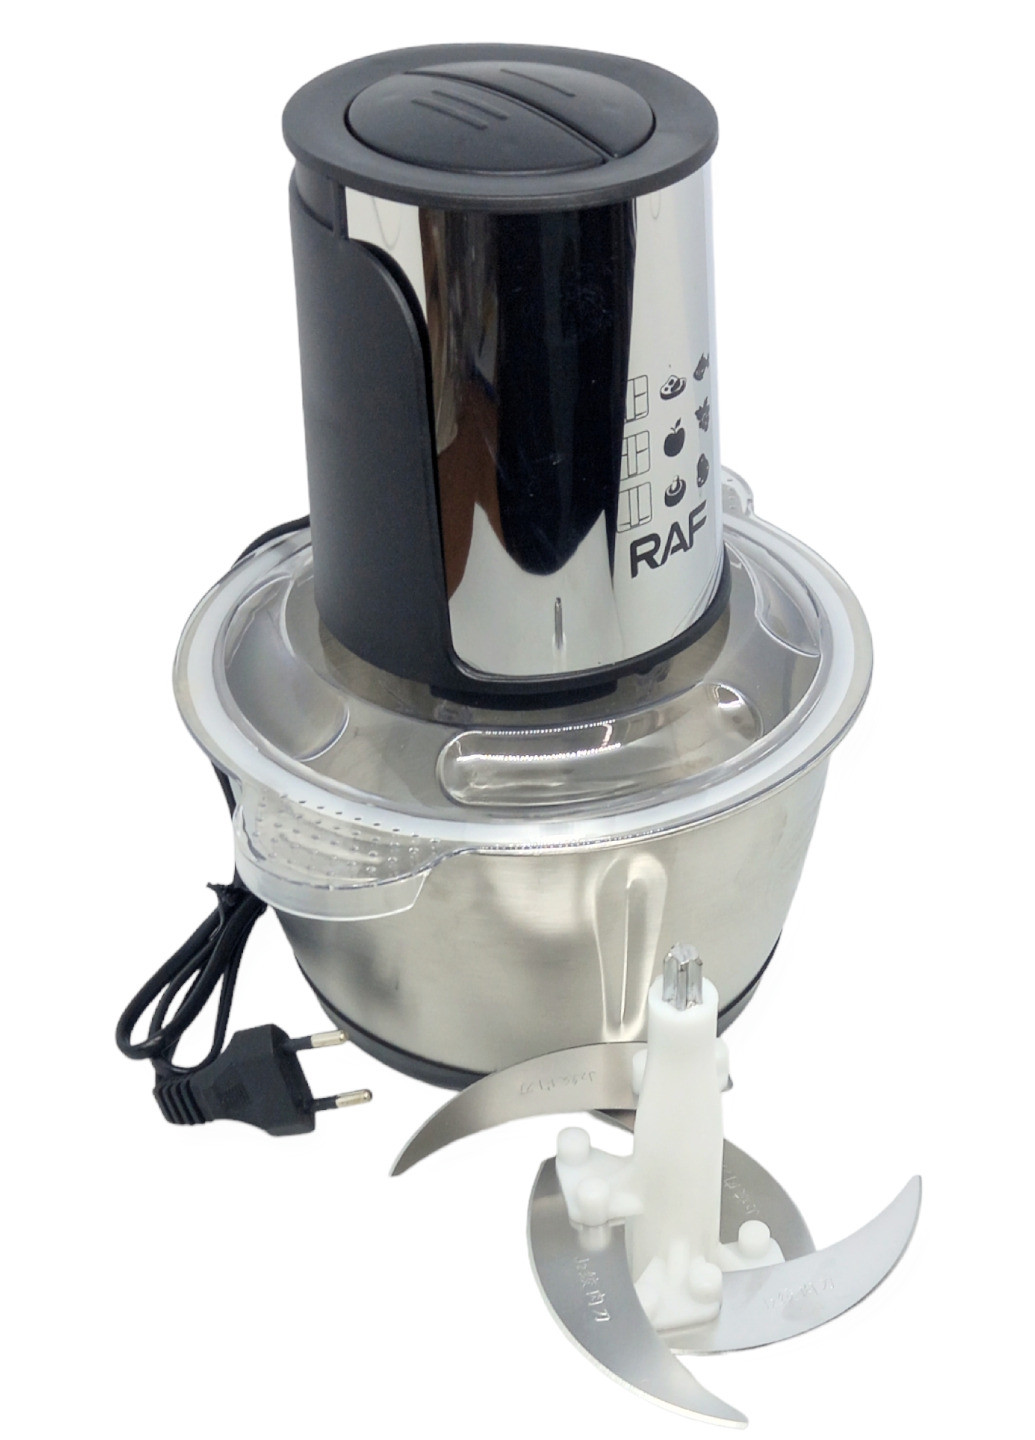 Комбайн кухонный блендер с металлической чашей измельчитель мясорубка с двухъярусным лезвием электрический RAF (266144805)